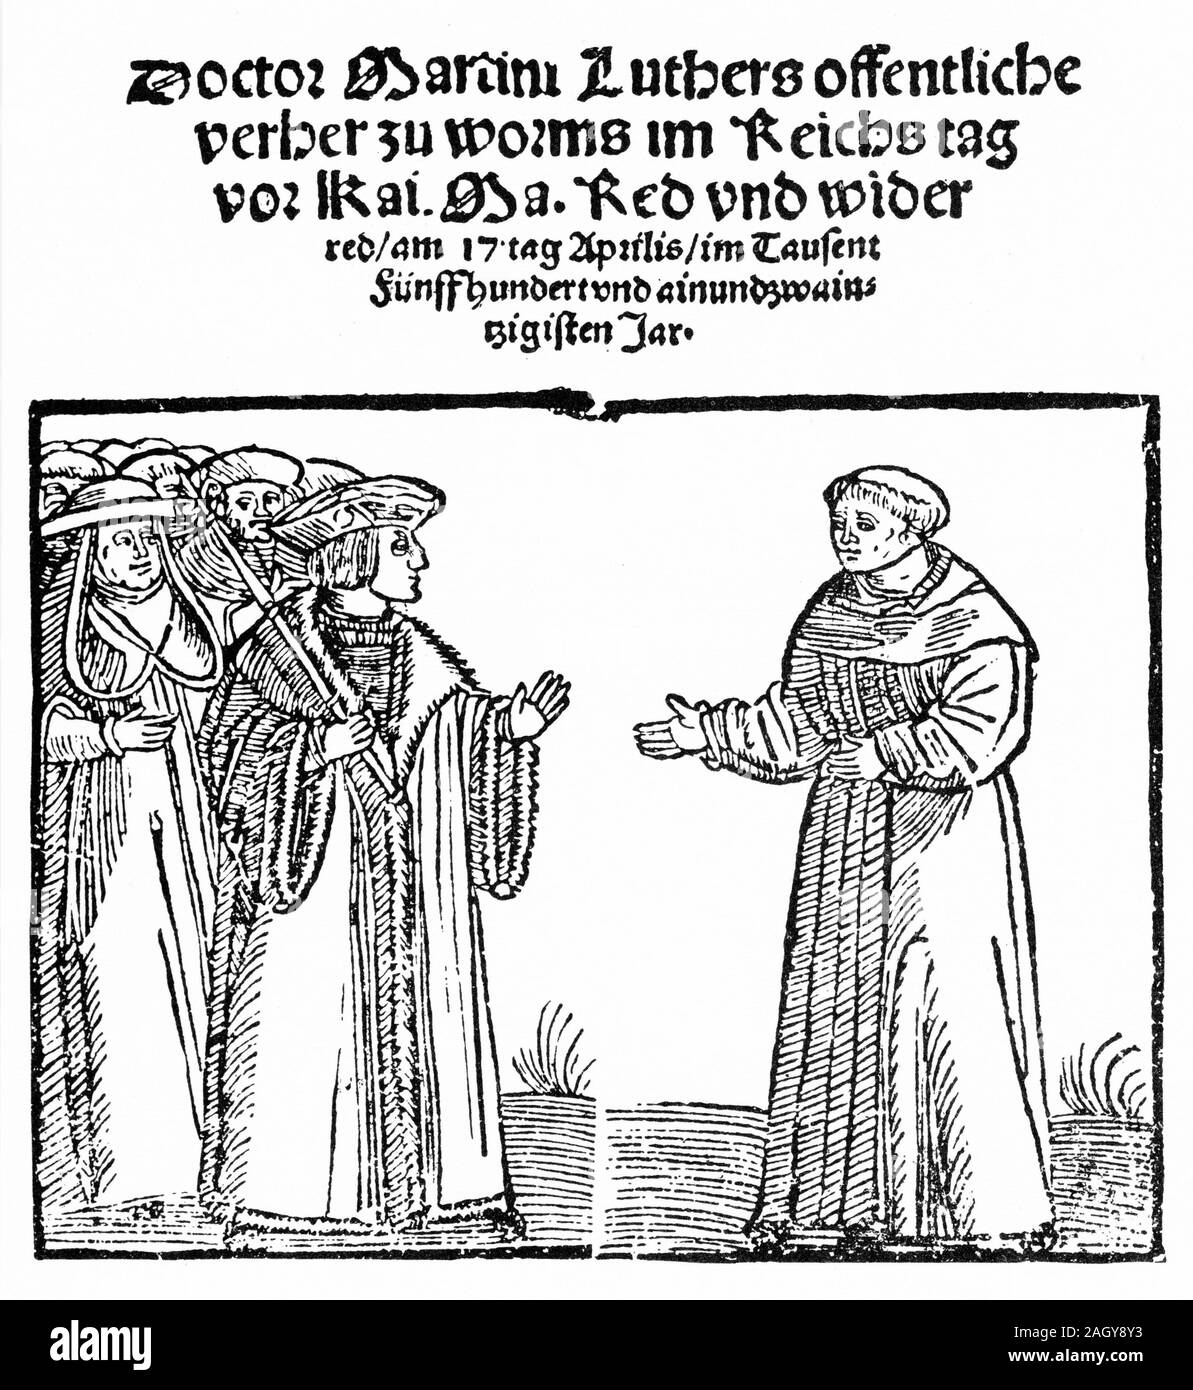 Grabado de Martín Lutero en Worms en 1521, donde fue a dar cuenta de sus enseñanzas heréticas a la Iglesia Católica. Foto de stock